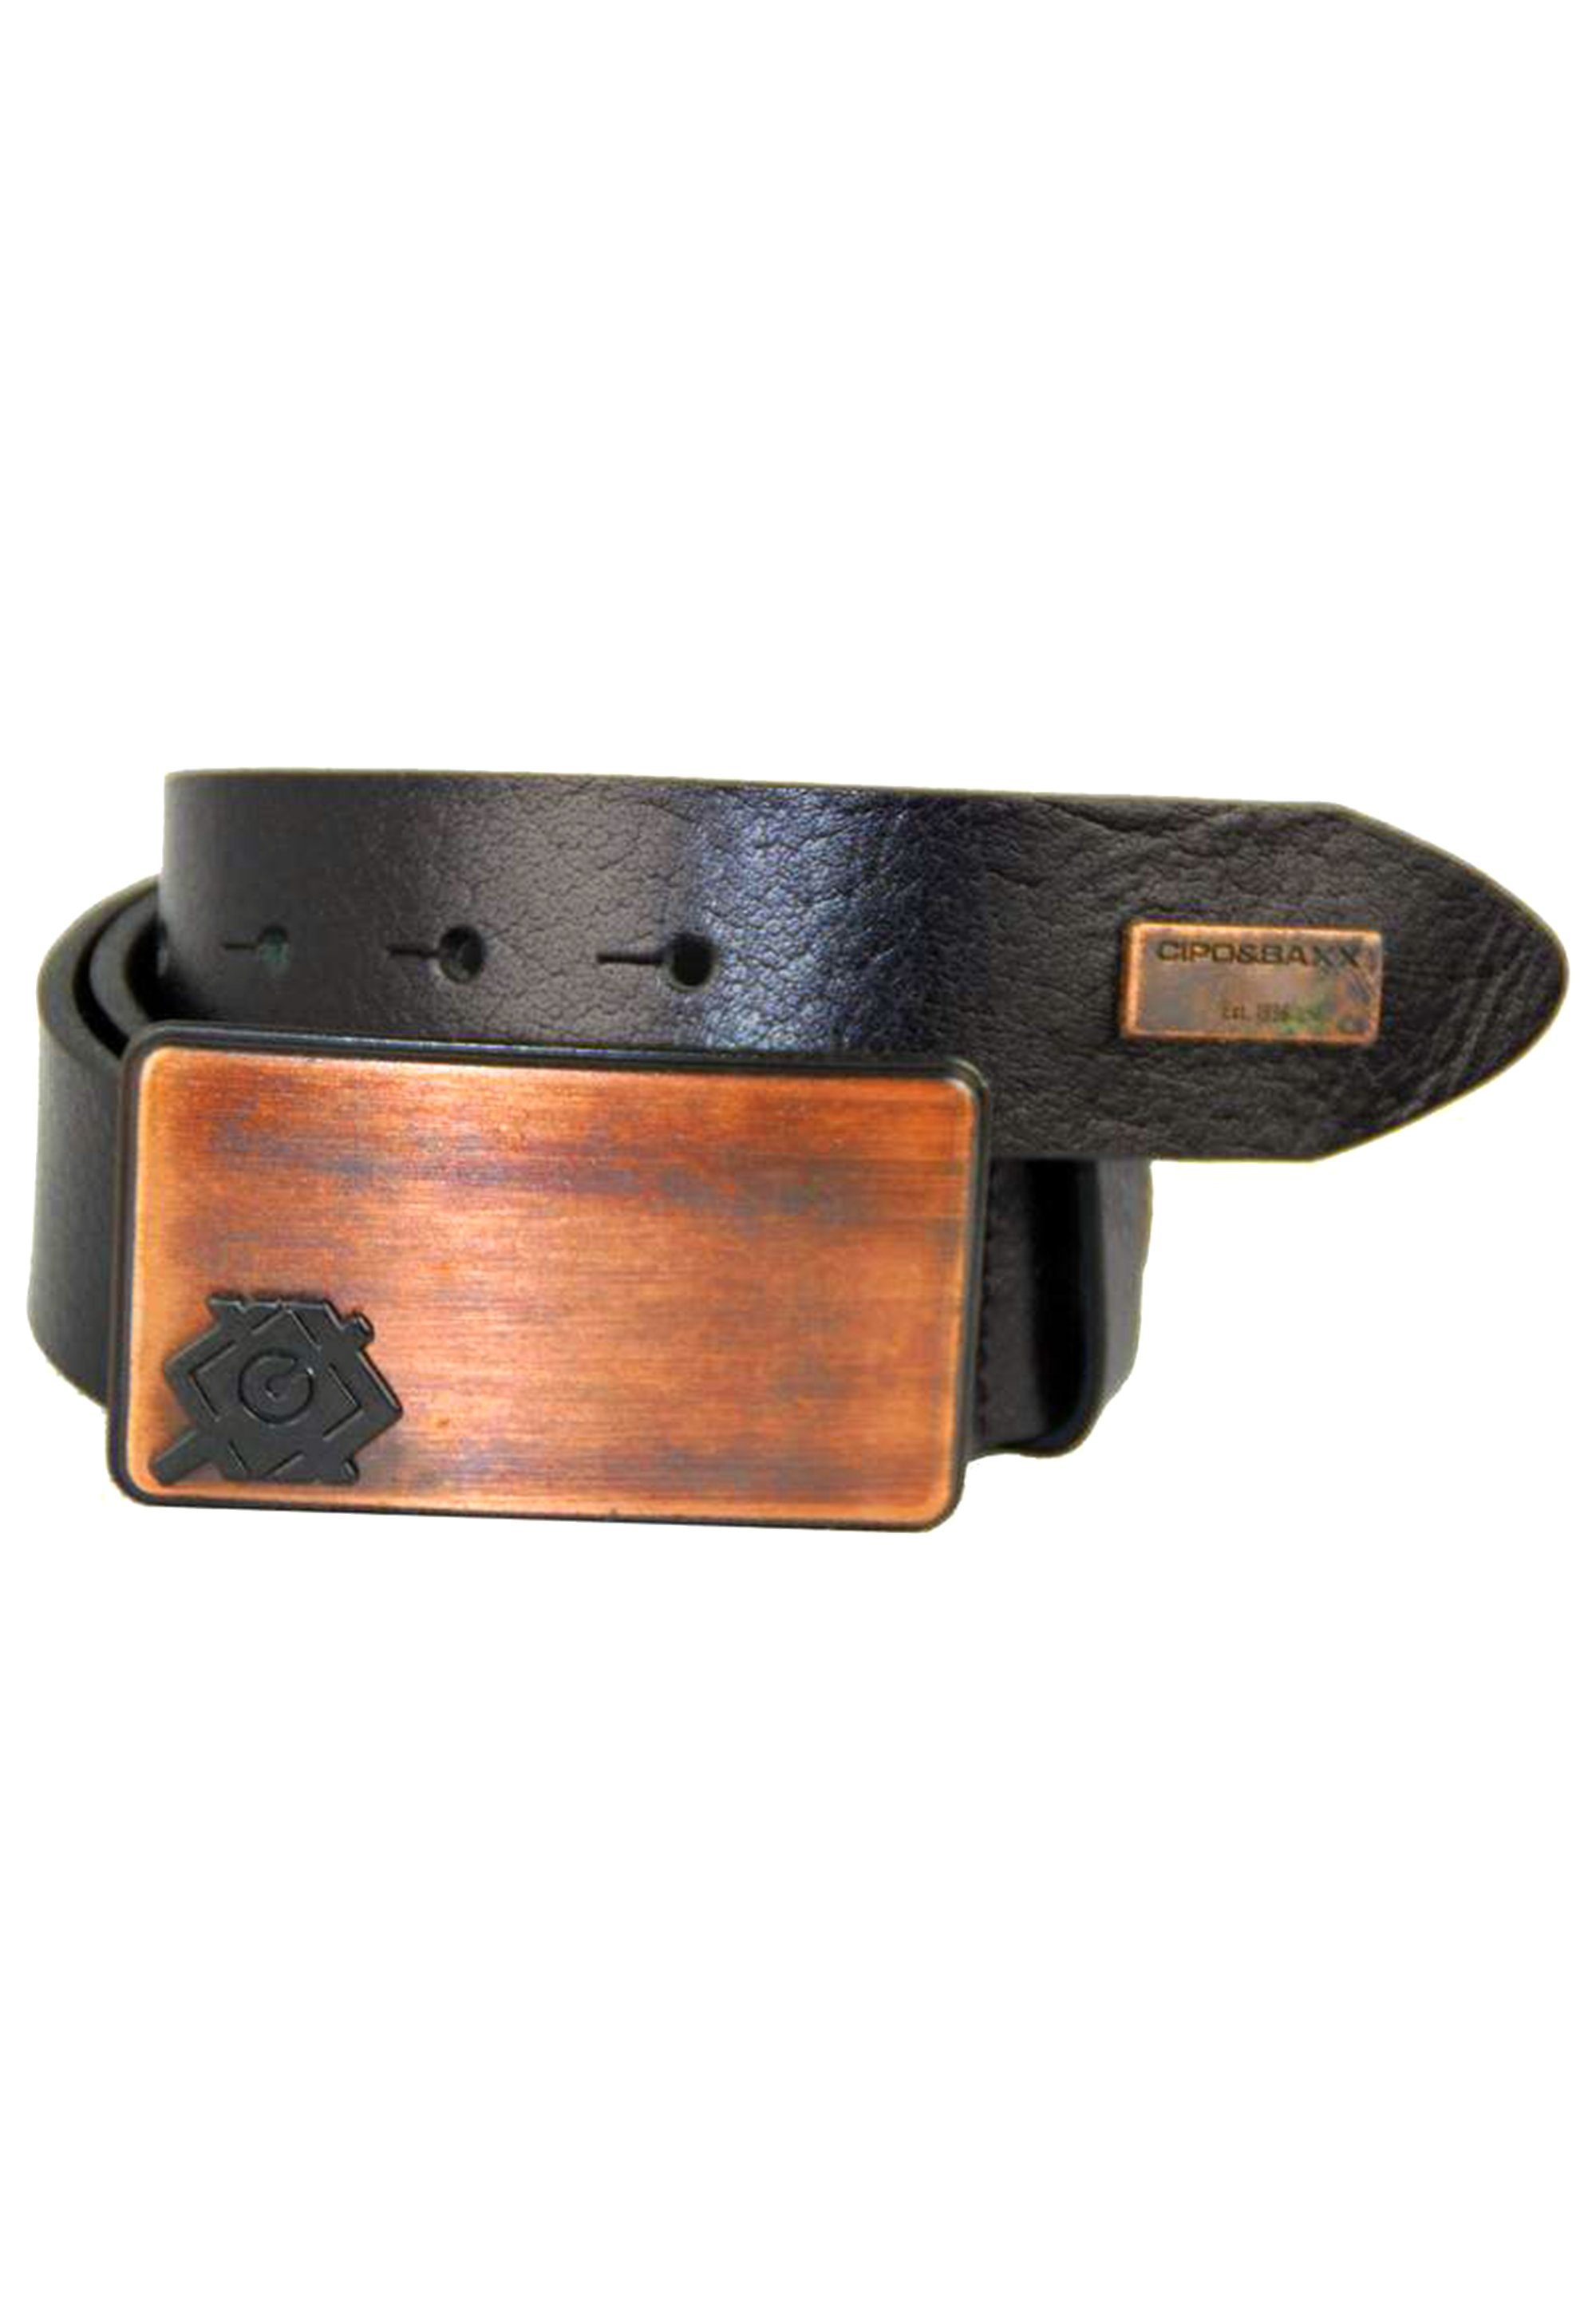 Cipo & Baxx Ledergürtel mit Metallschnalle schwarz stylischer